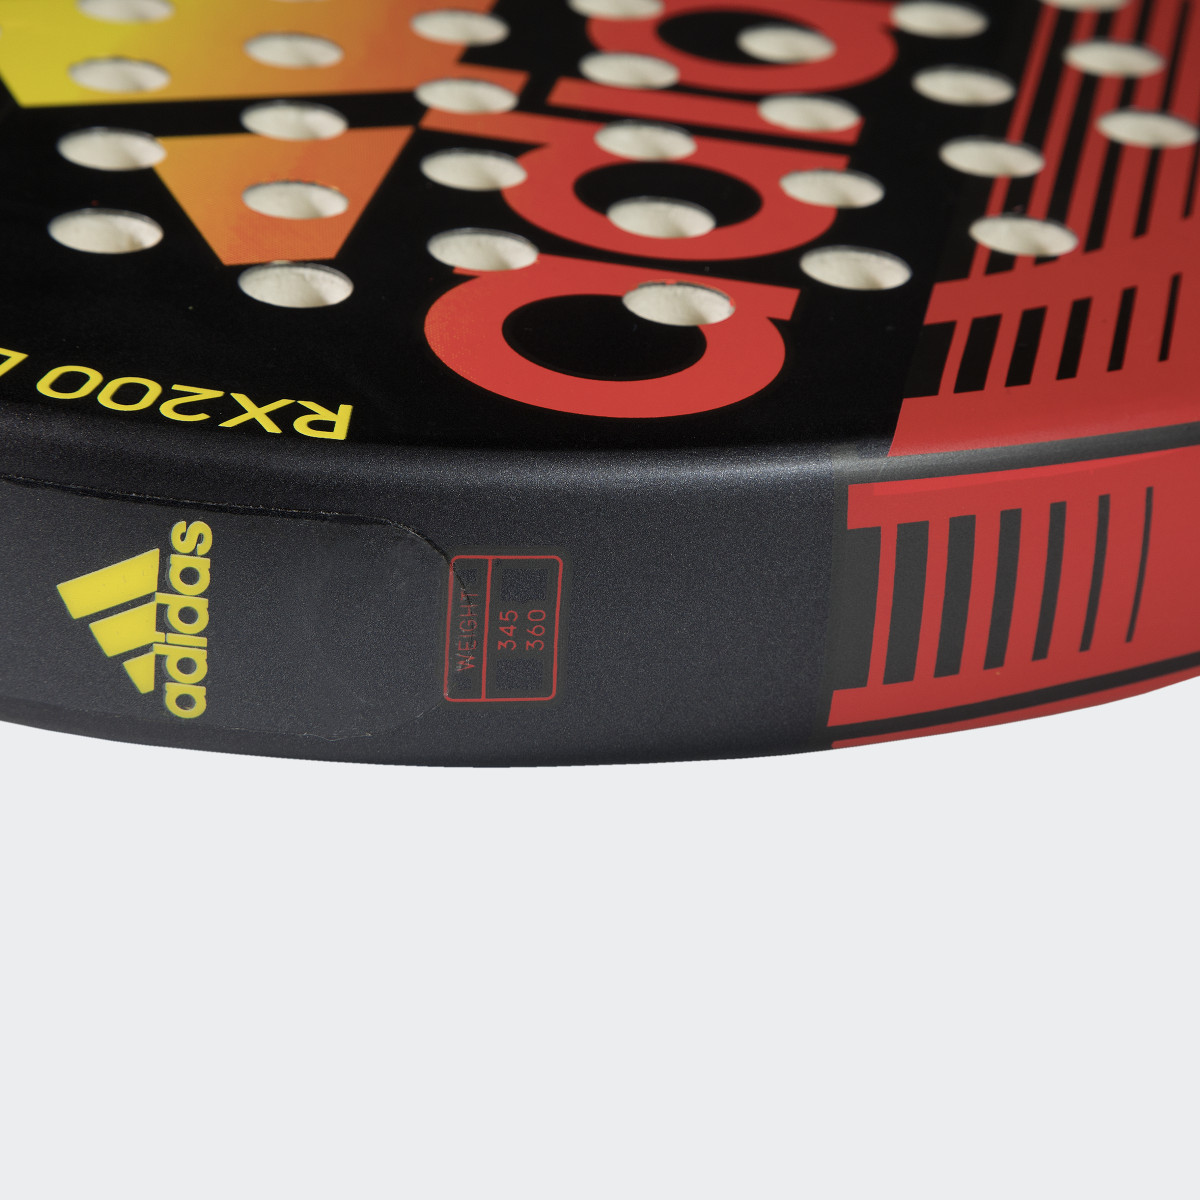 Adidas RX 200 Light Racquet. 4